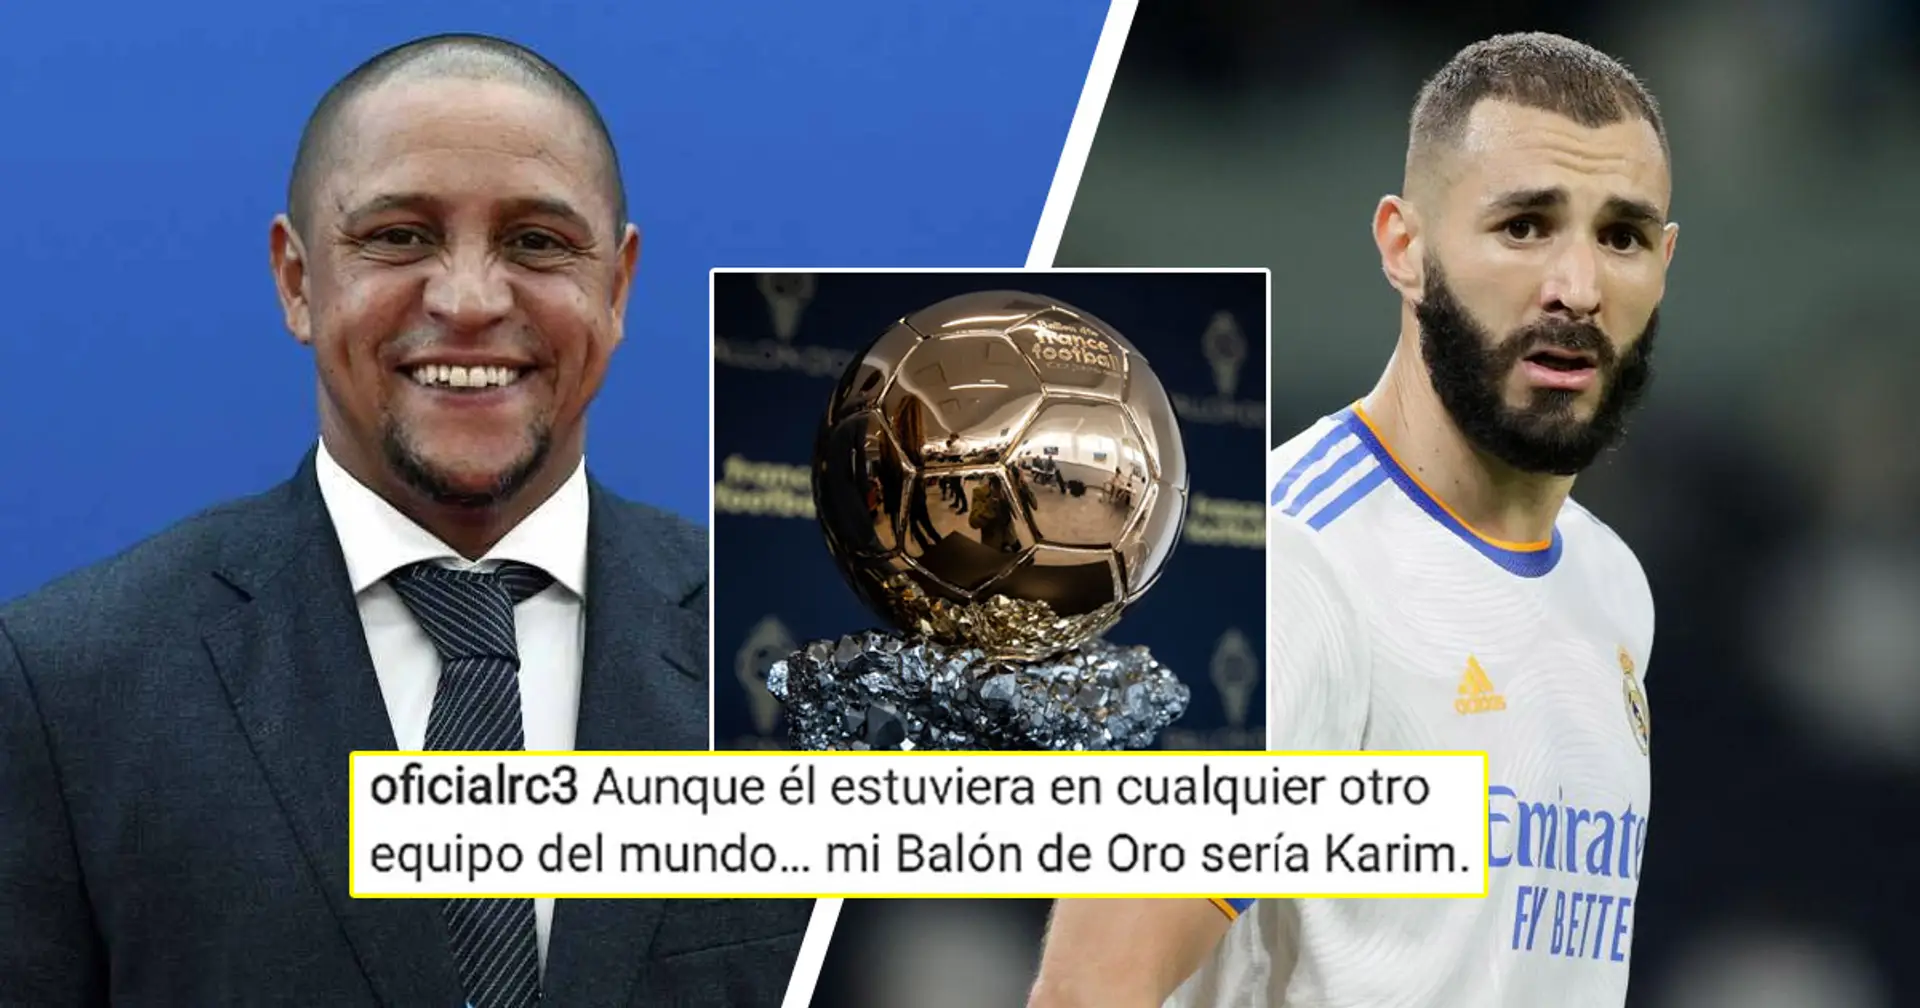 "Le best of the best": Roberto Carlos soutient Benzema dans la course au Ballon d'Or